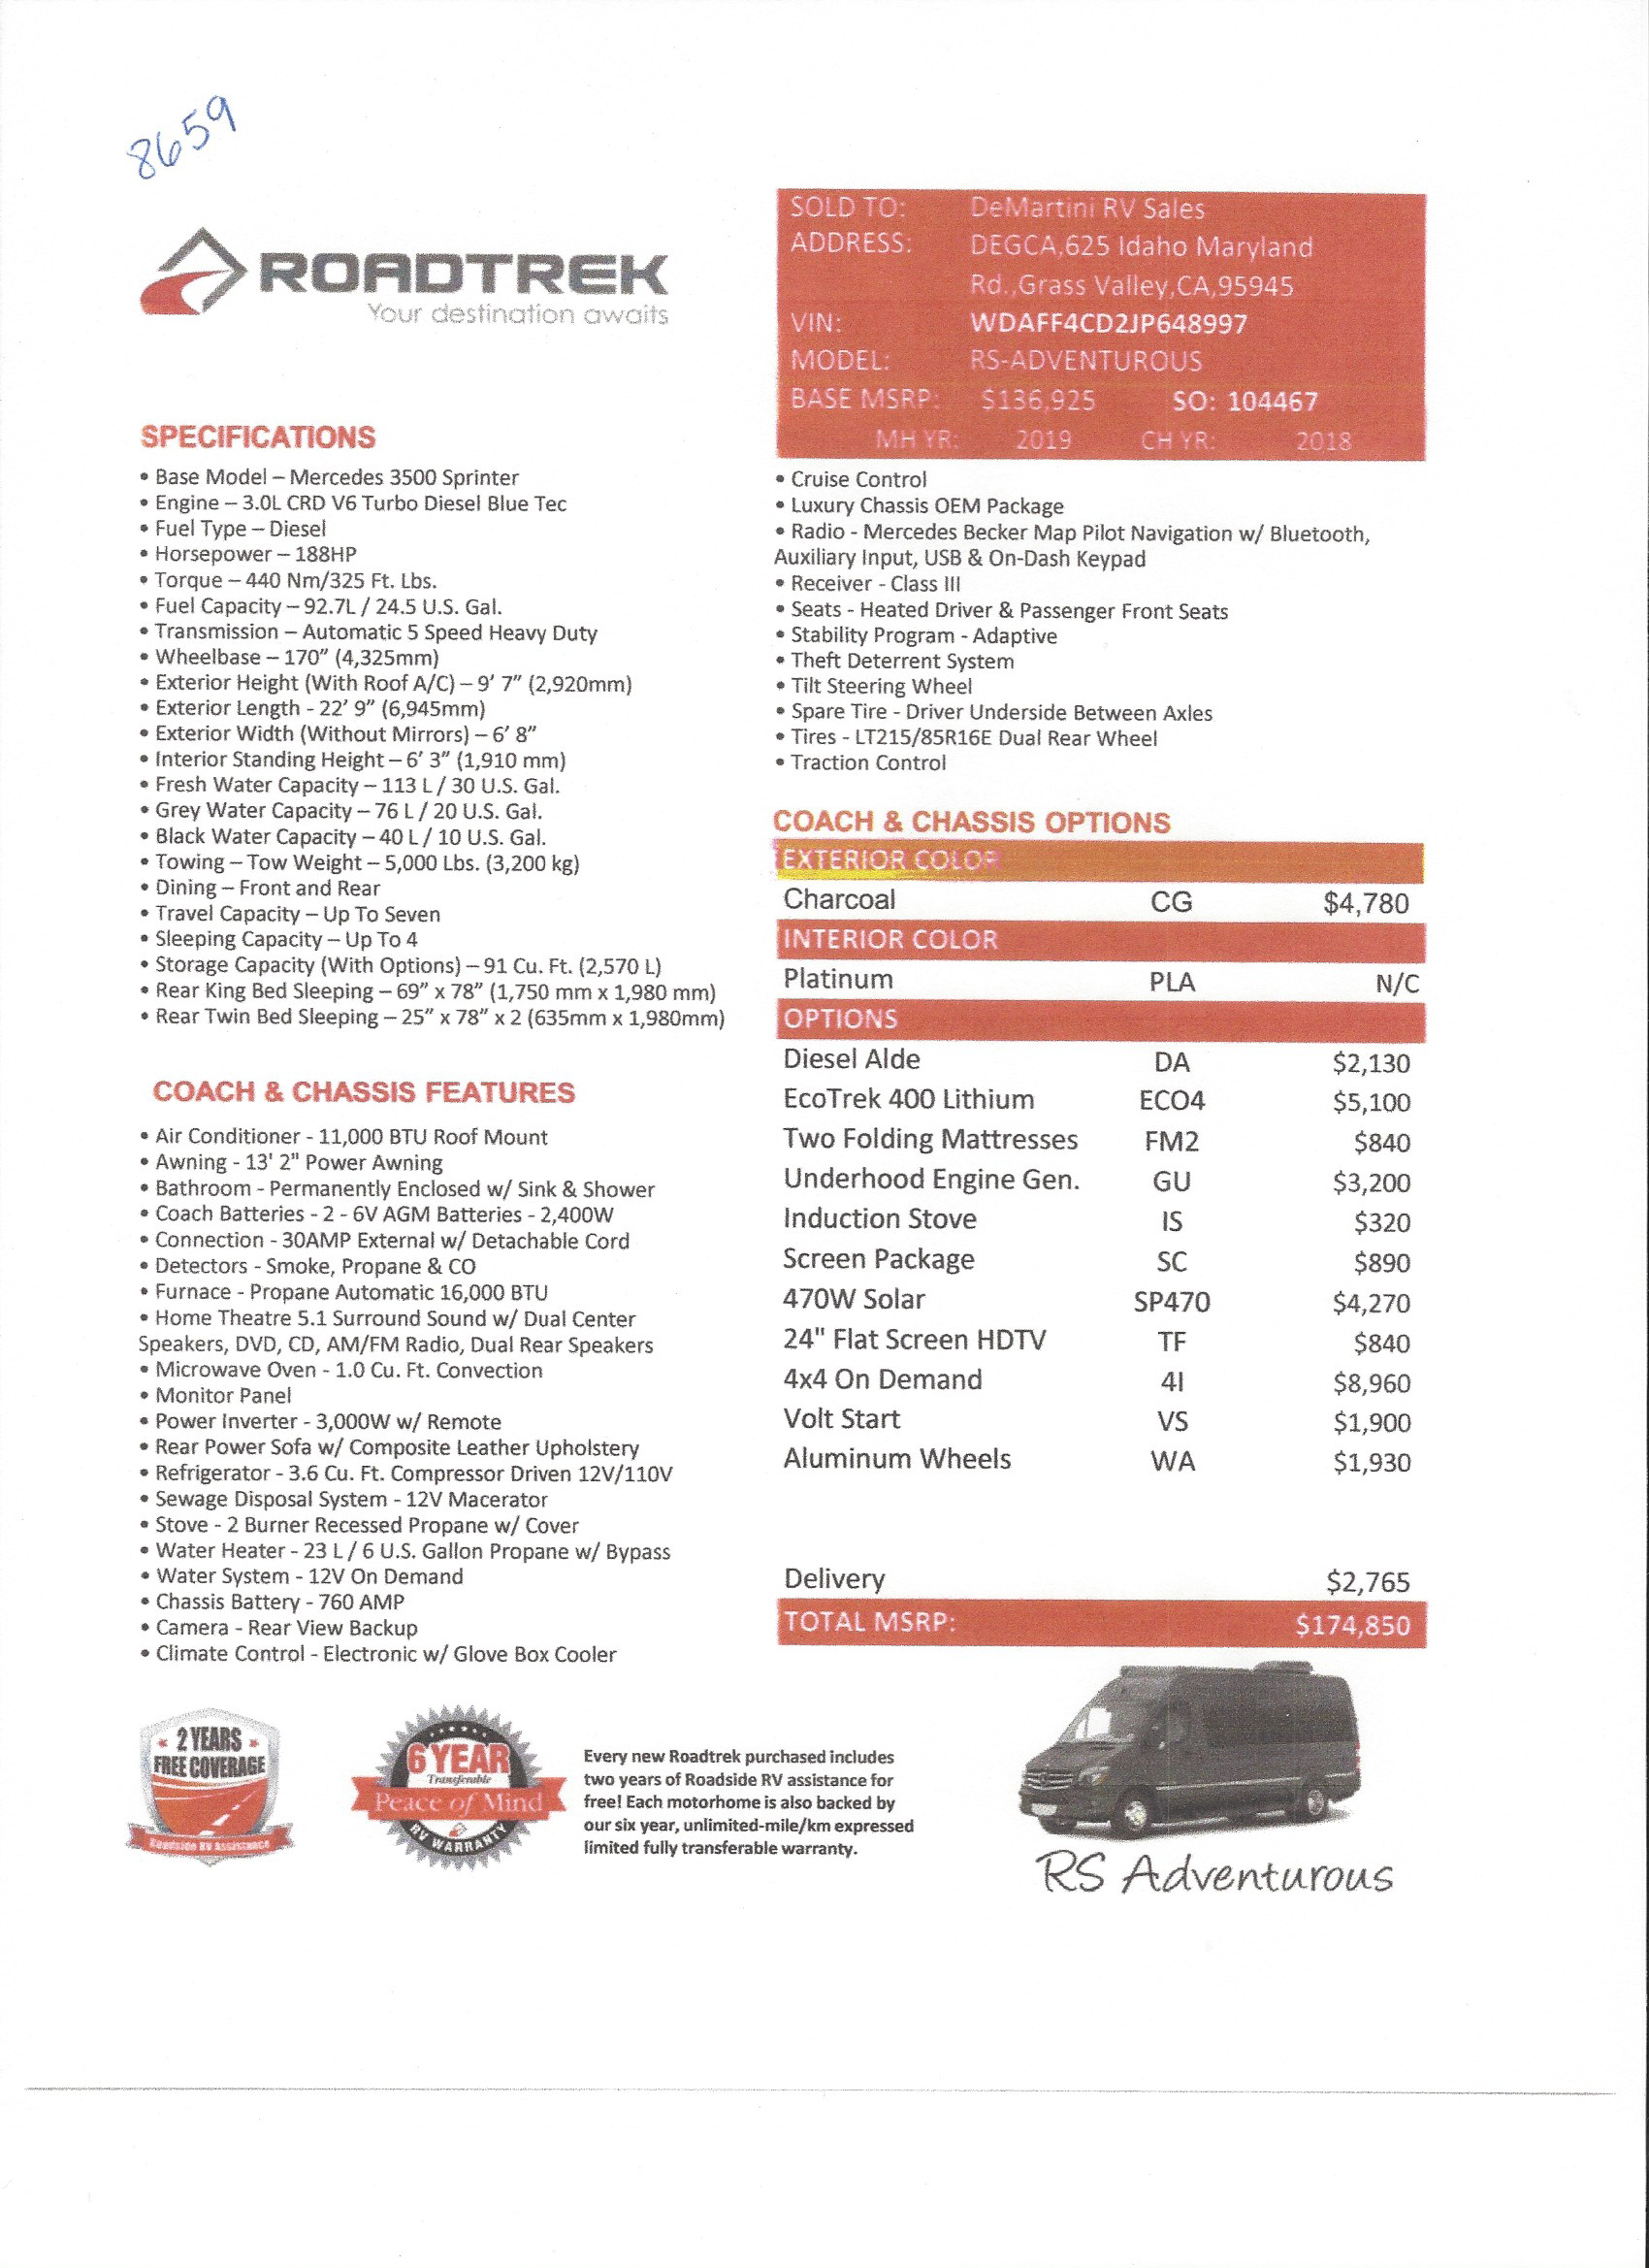 2019 Roadtrek RS Adventurous 4x4 MSRP Sheet